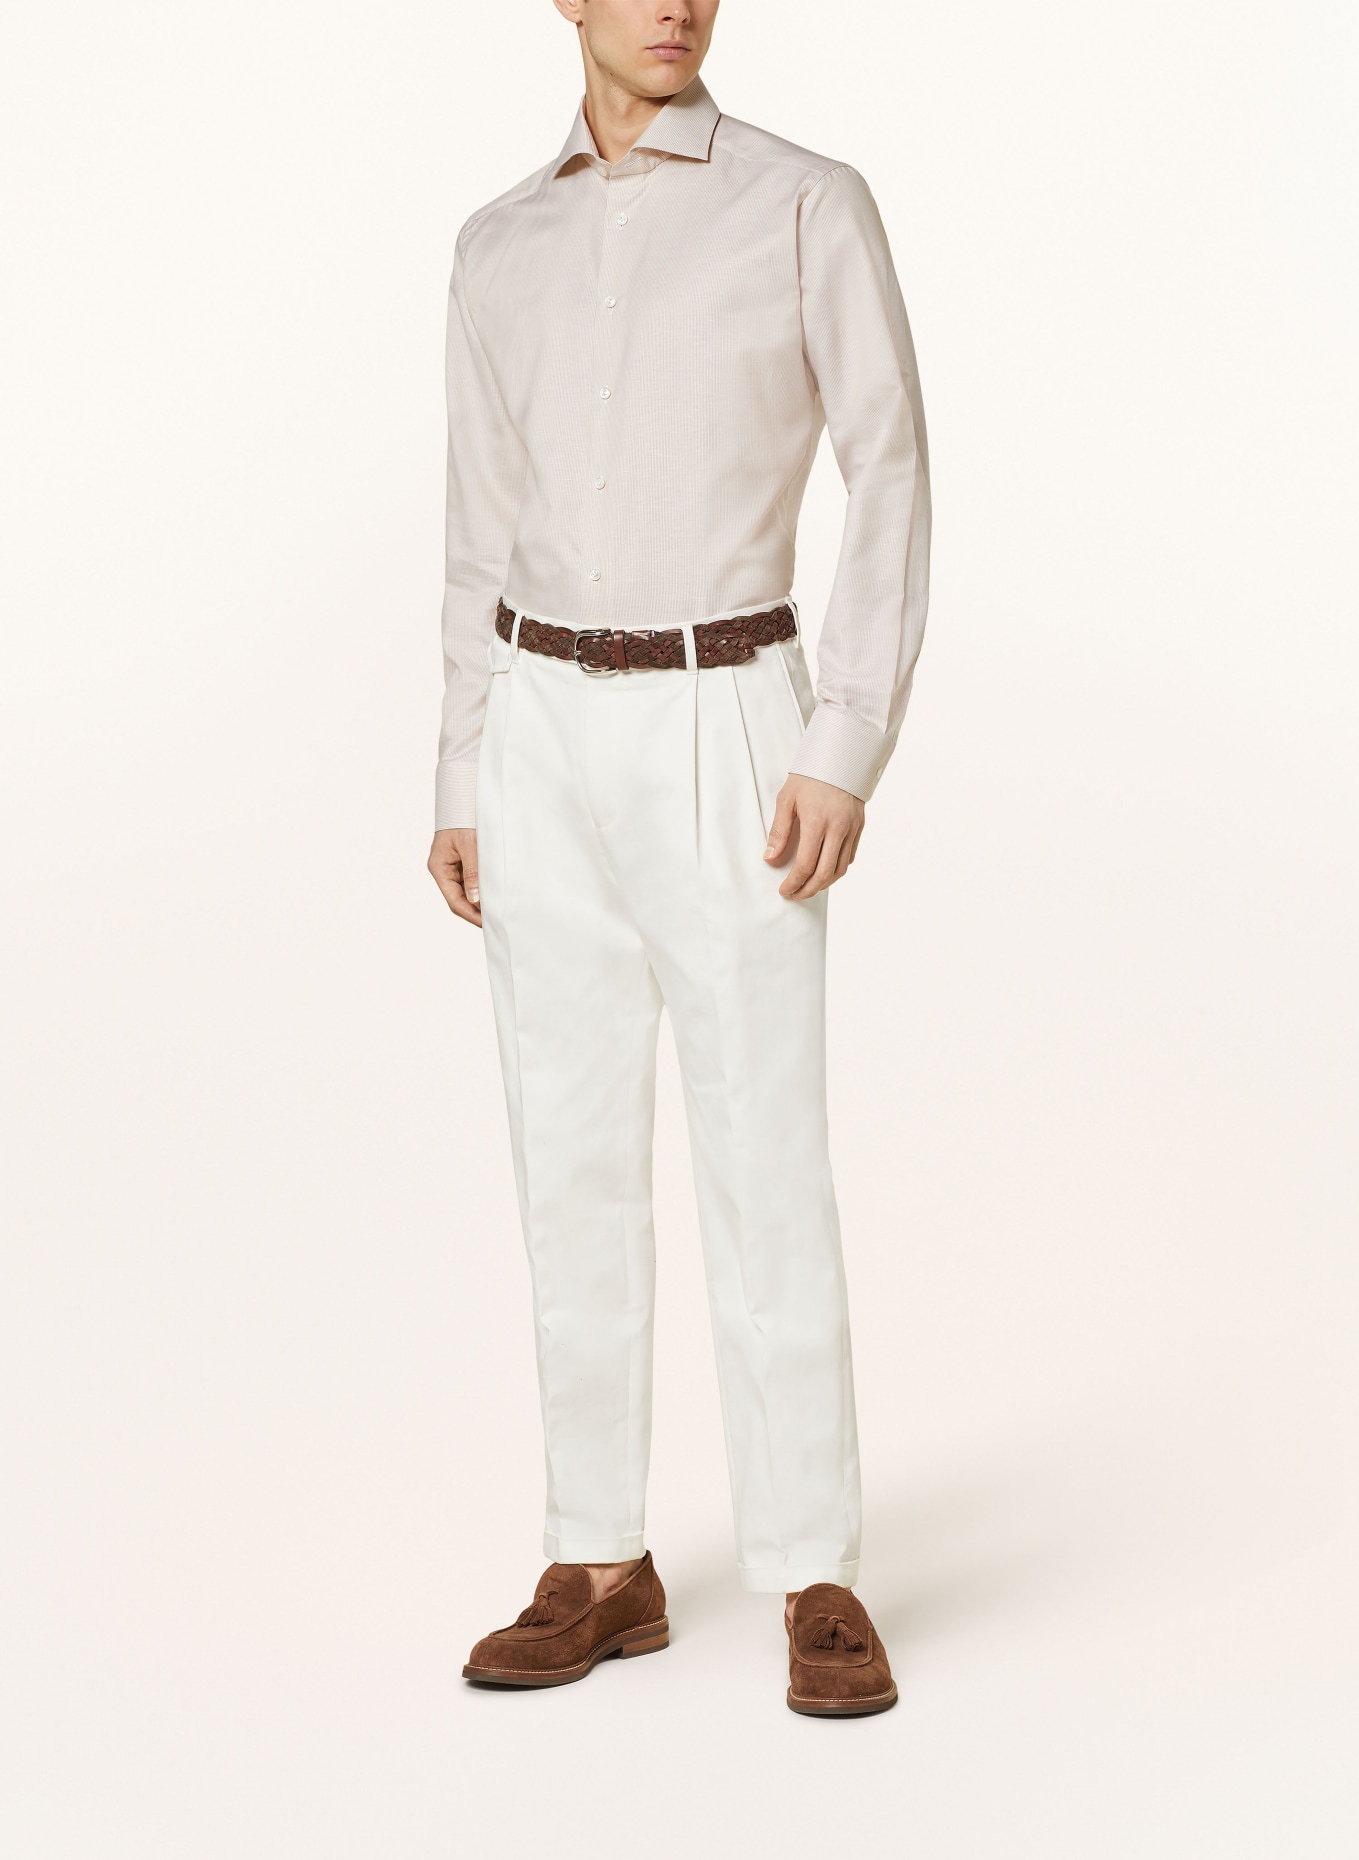 ETON Shirt slim fit, Color: BEIGE (Image 2)